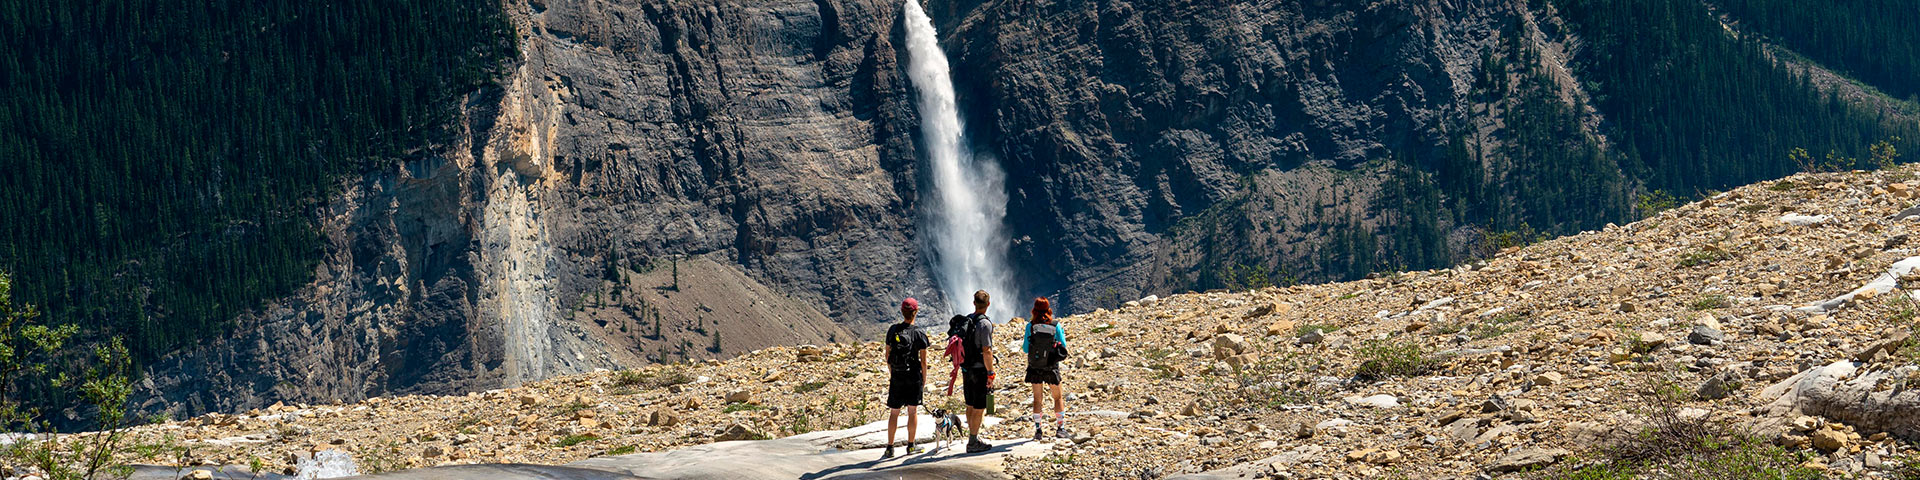 Les randonneurs profitent de la vue sur une cascade à travers la vallée